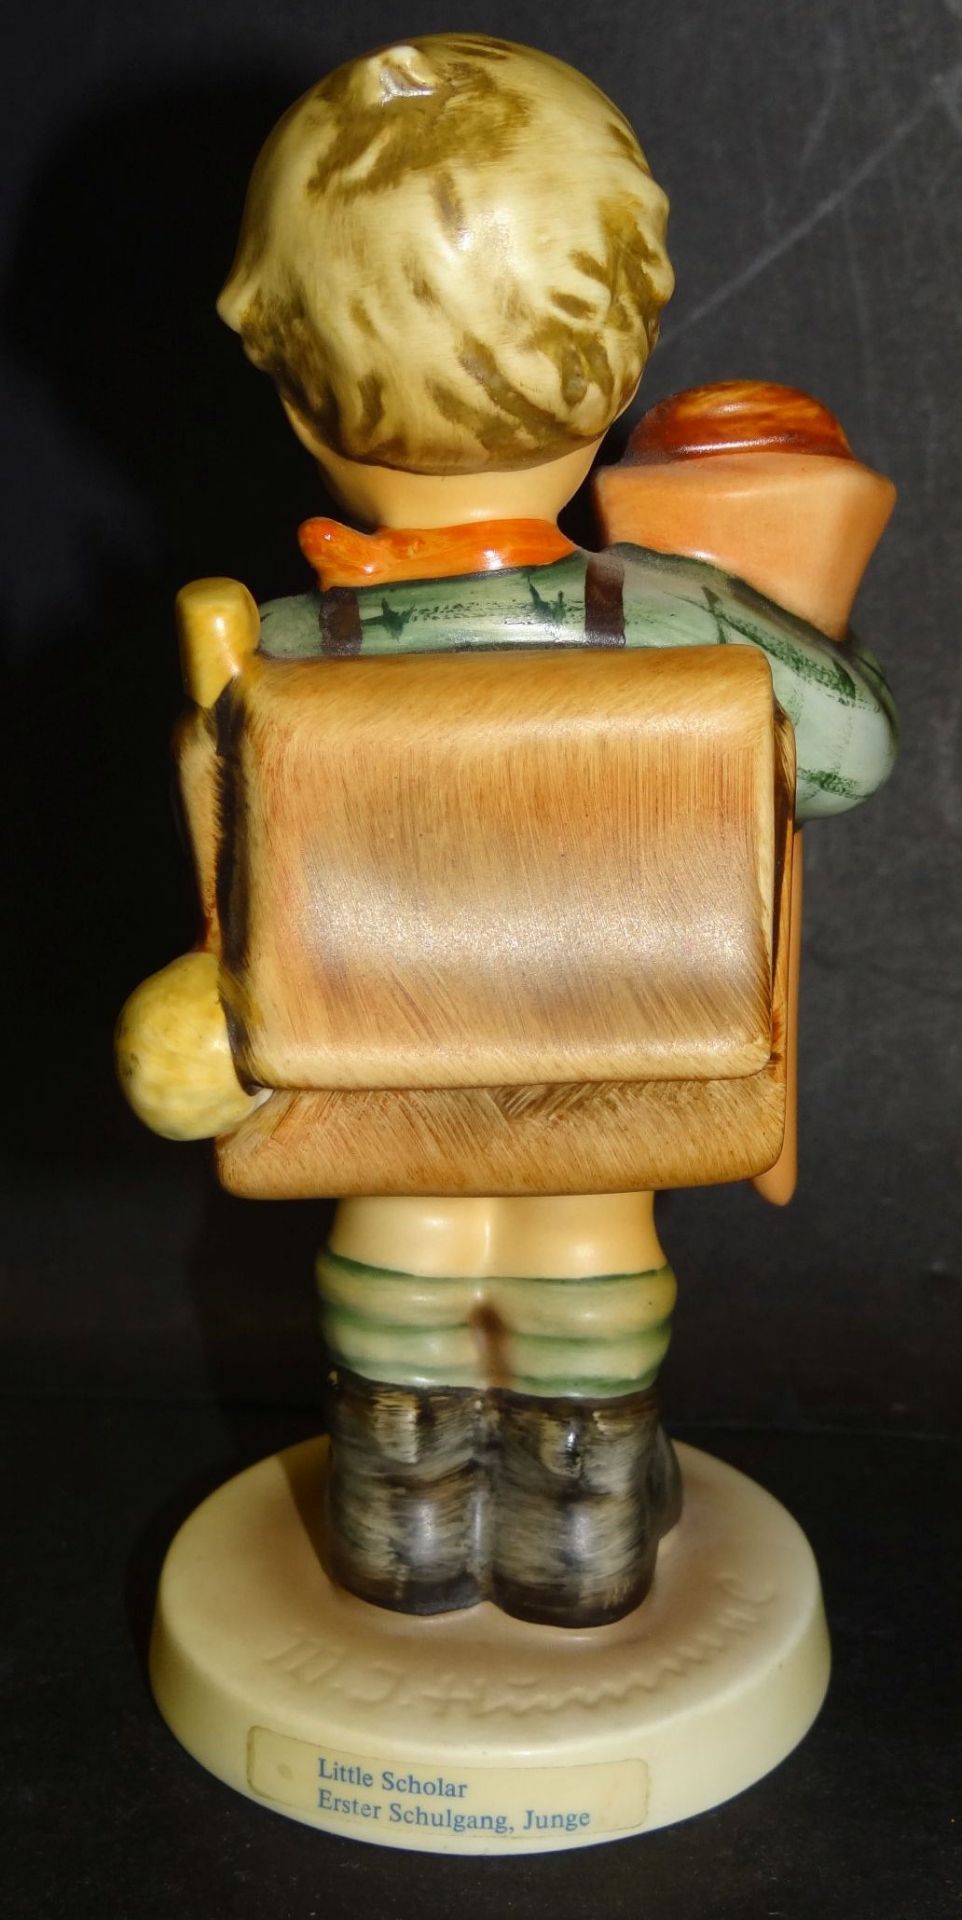 Hummel-Figur "Erster Schulgang, Junge" bemalt, H-14 cm, Unterseite Standring mit Abplatzer - Bild 3 aus 8